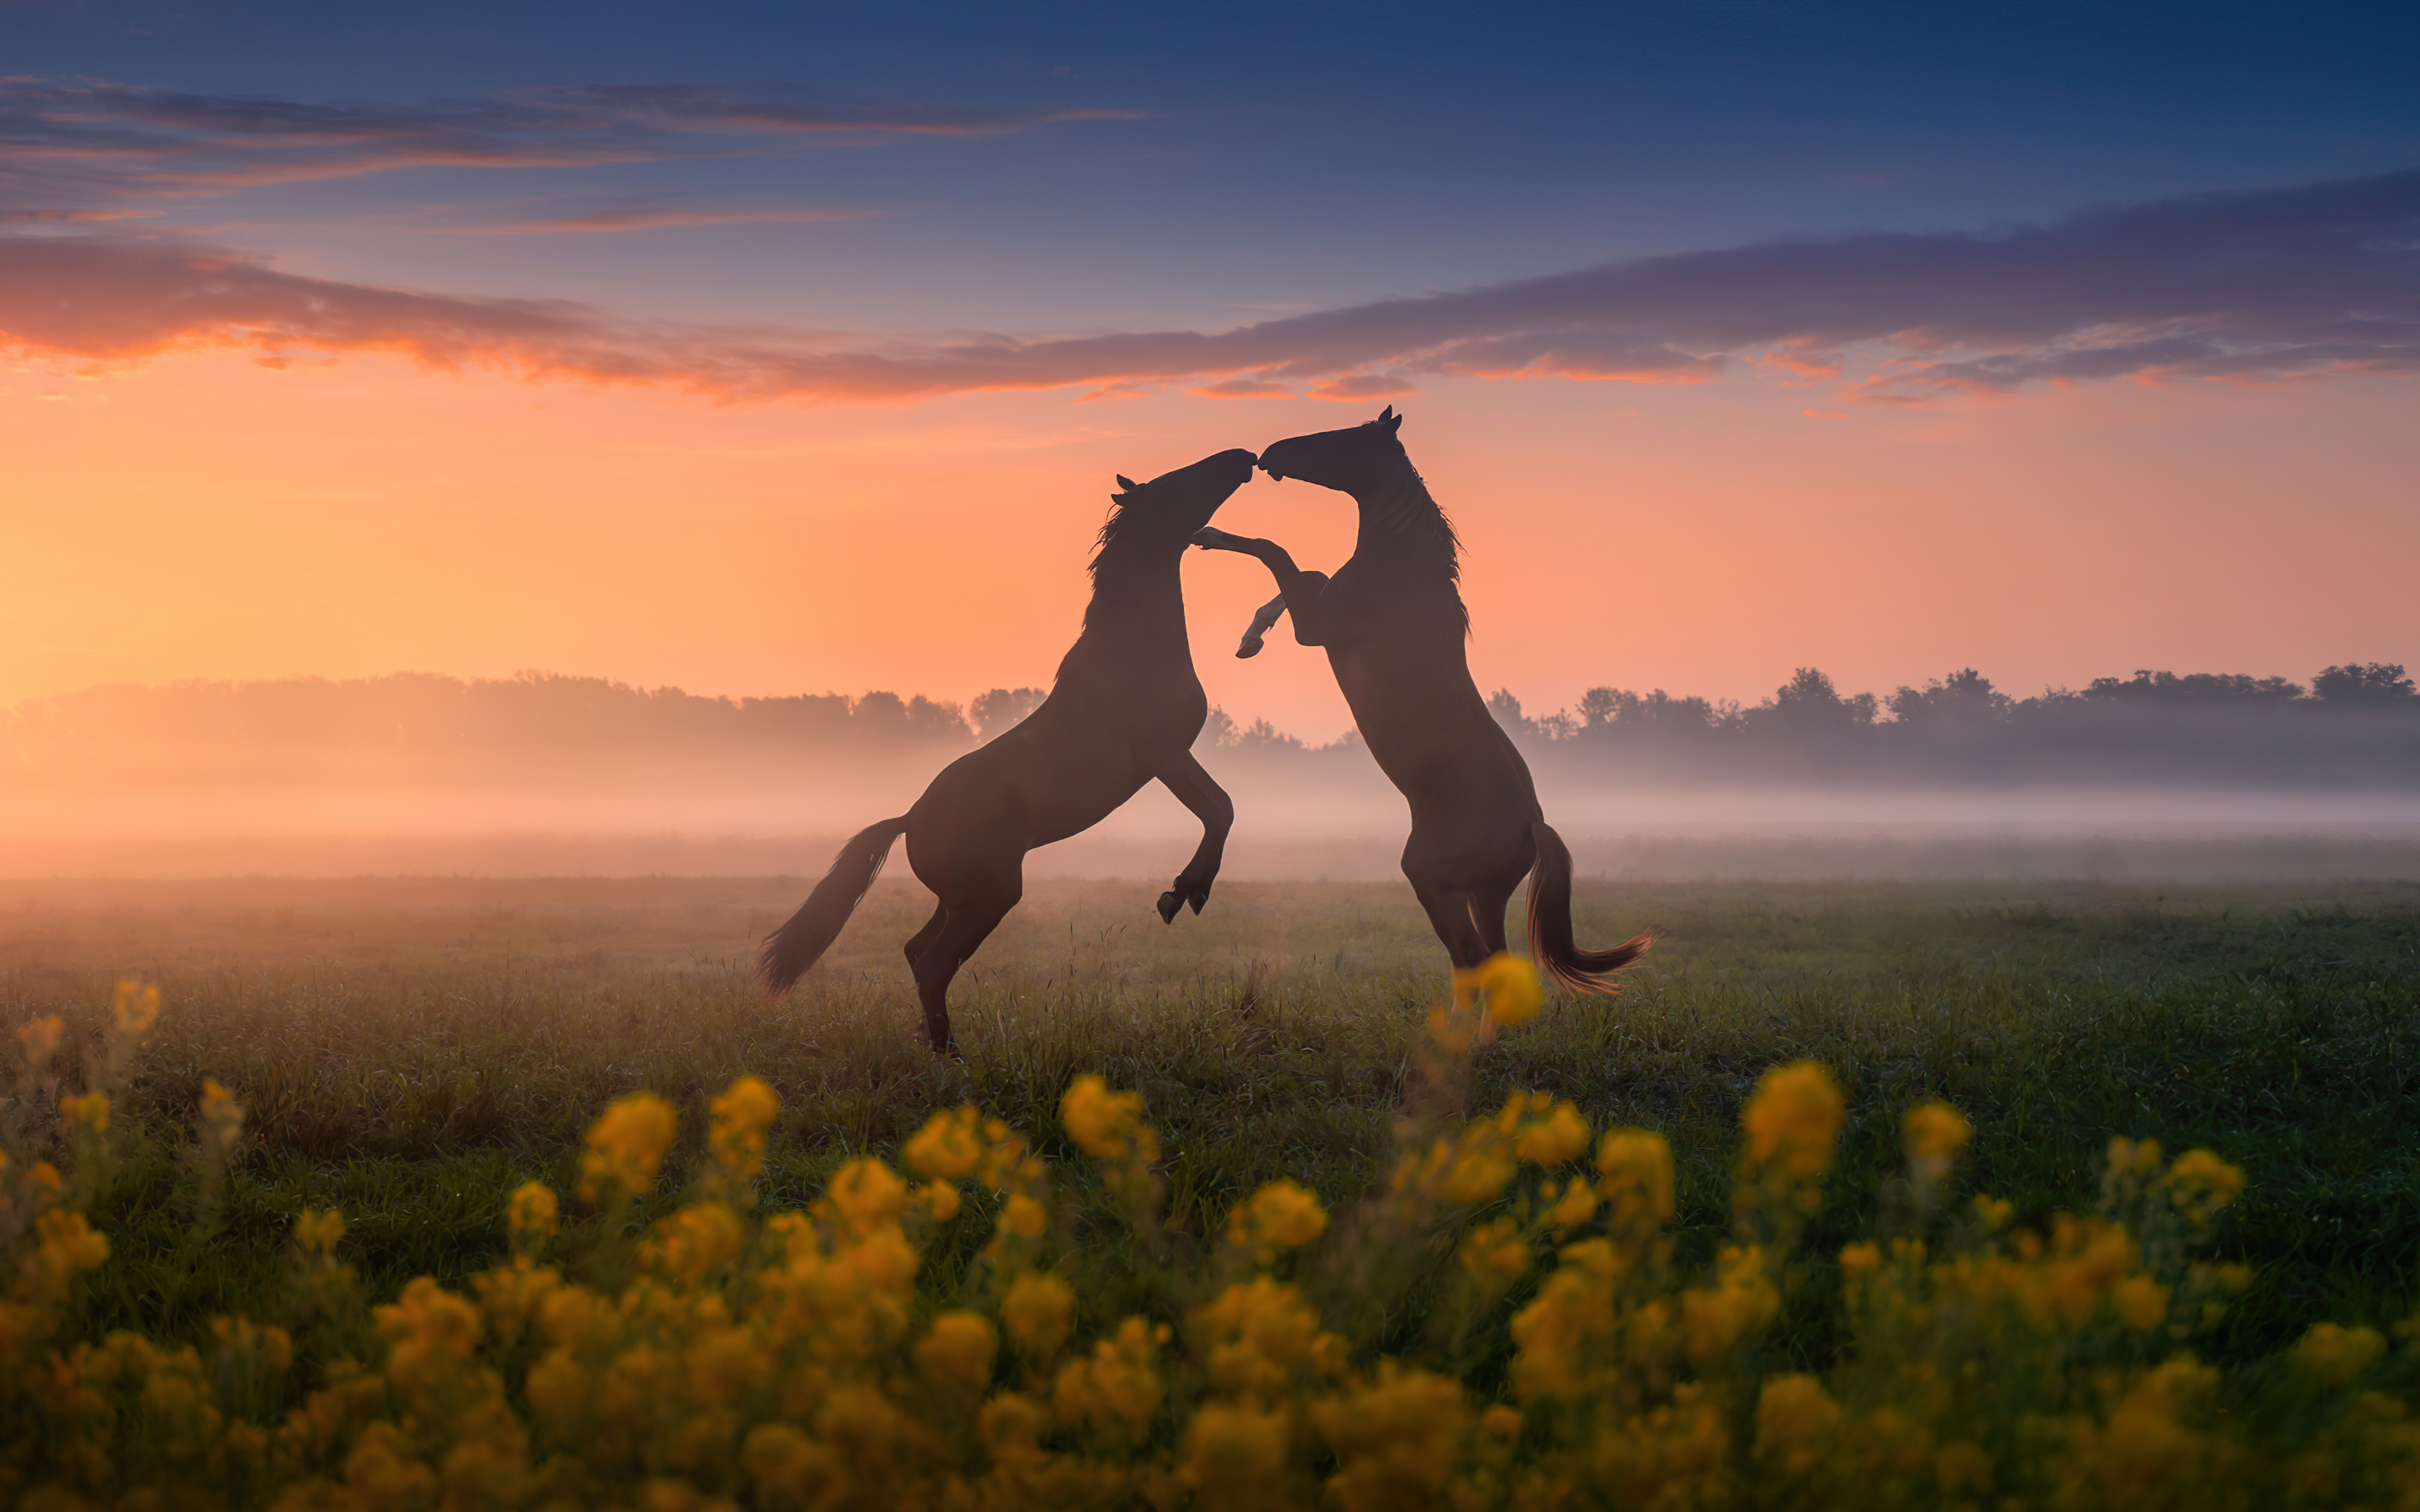 Horses' dance, sunset, silhouette, 2880x1800 wallpaper